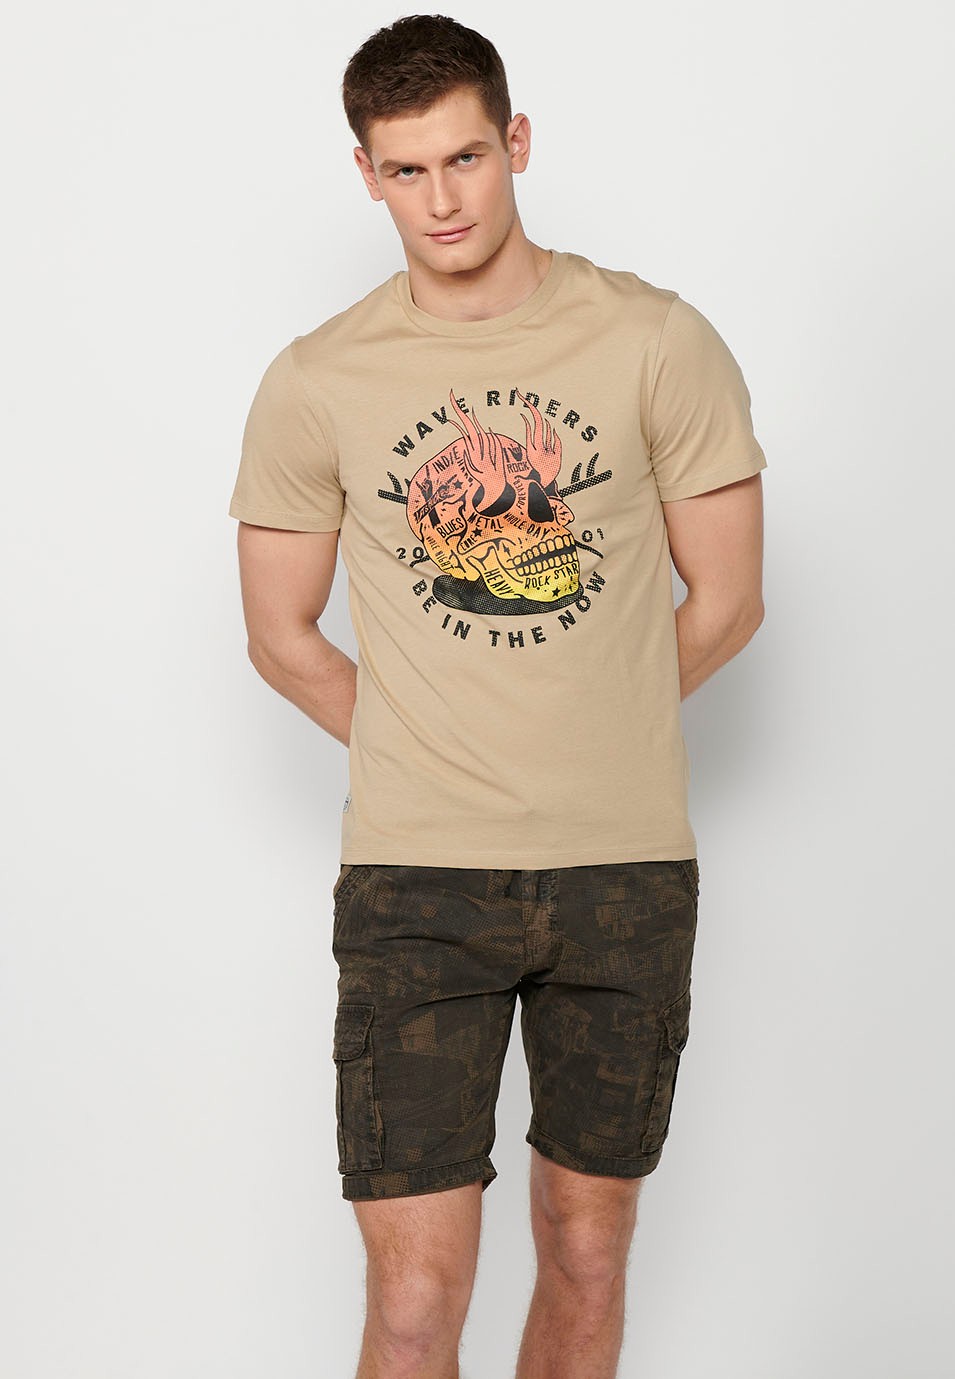 Camiseta manga corta de algodon, estampada, color piedra para hombre